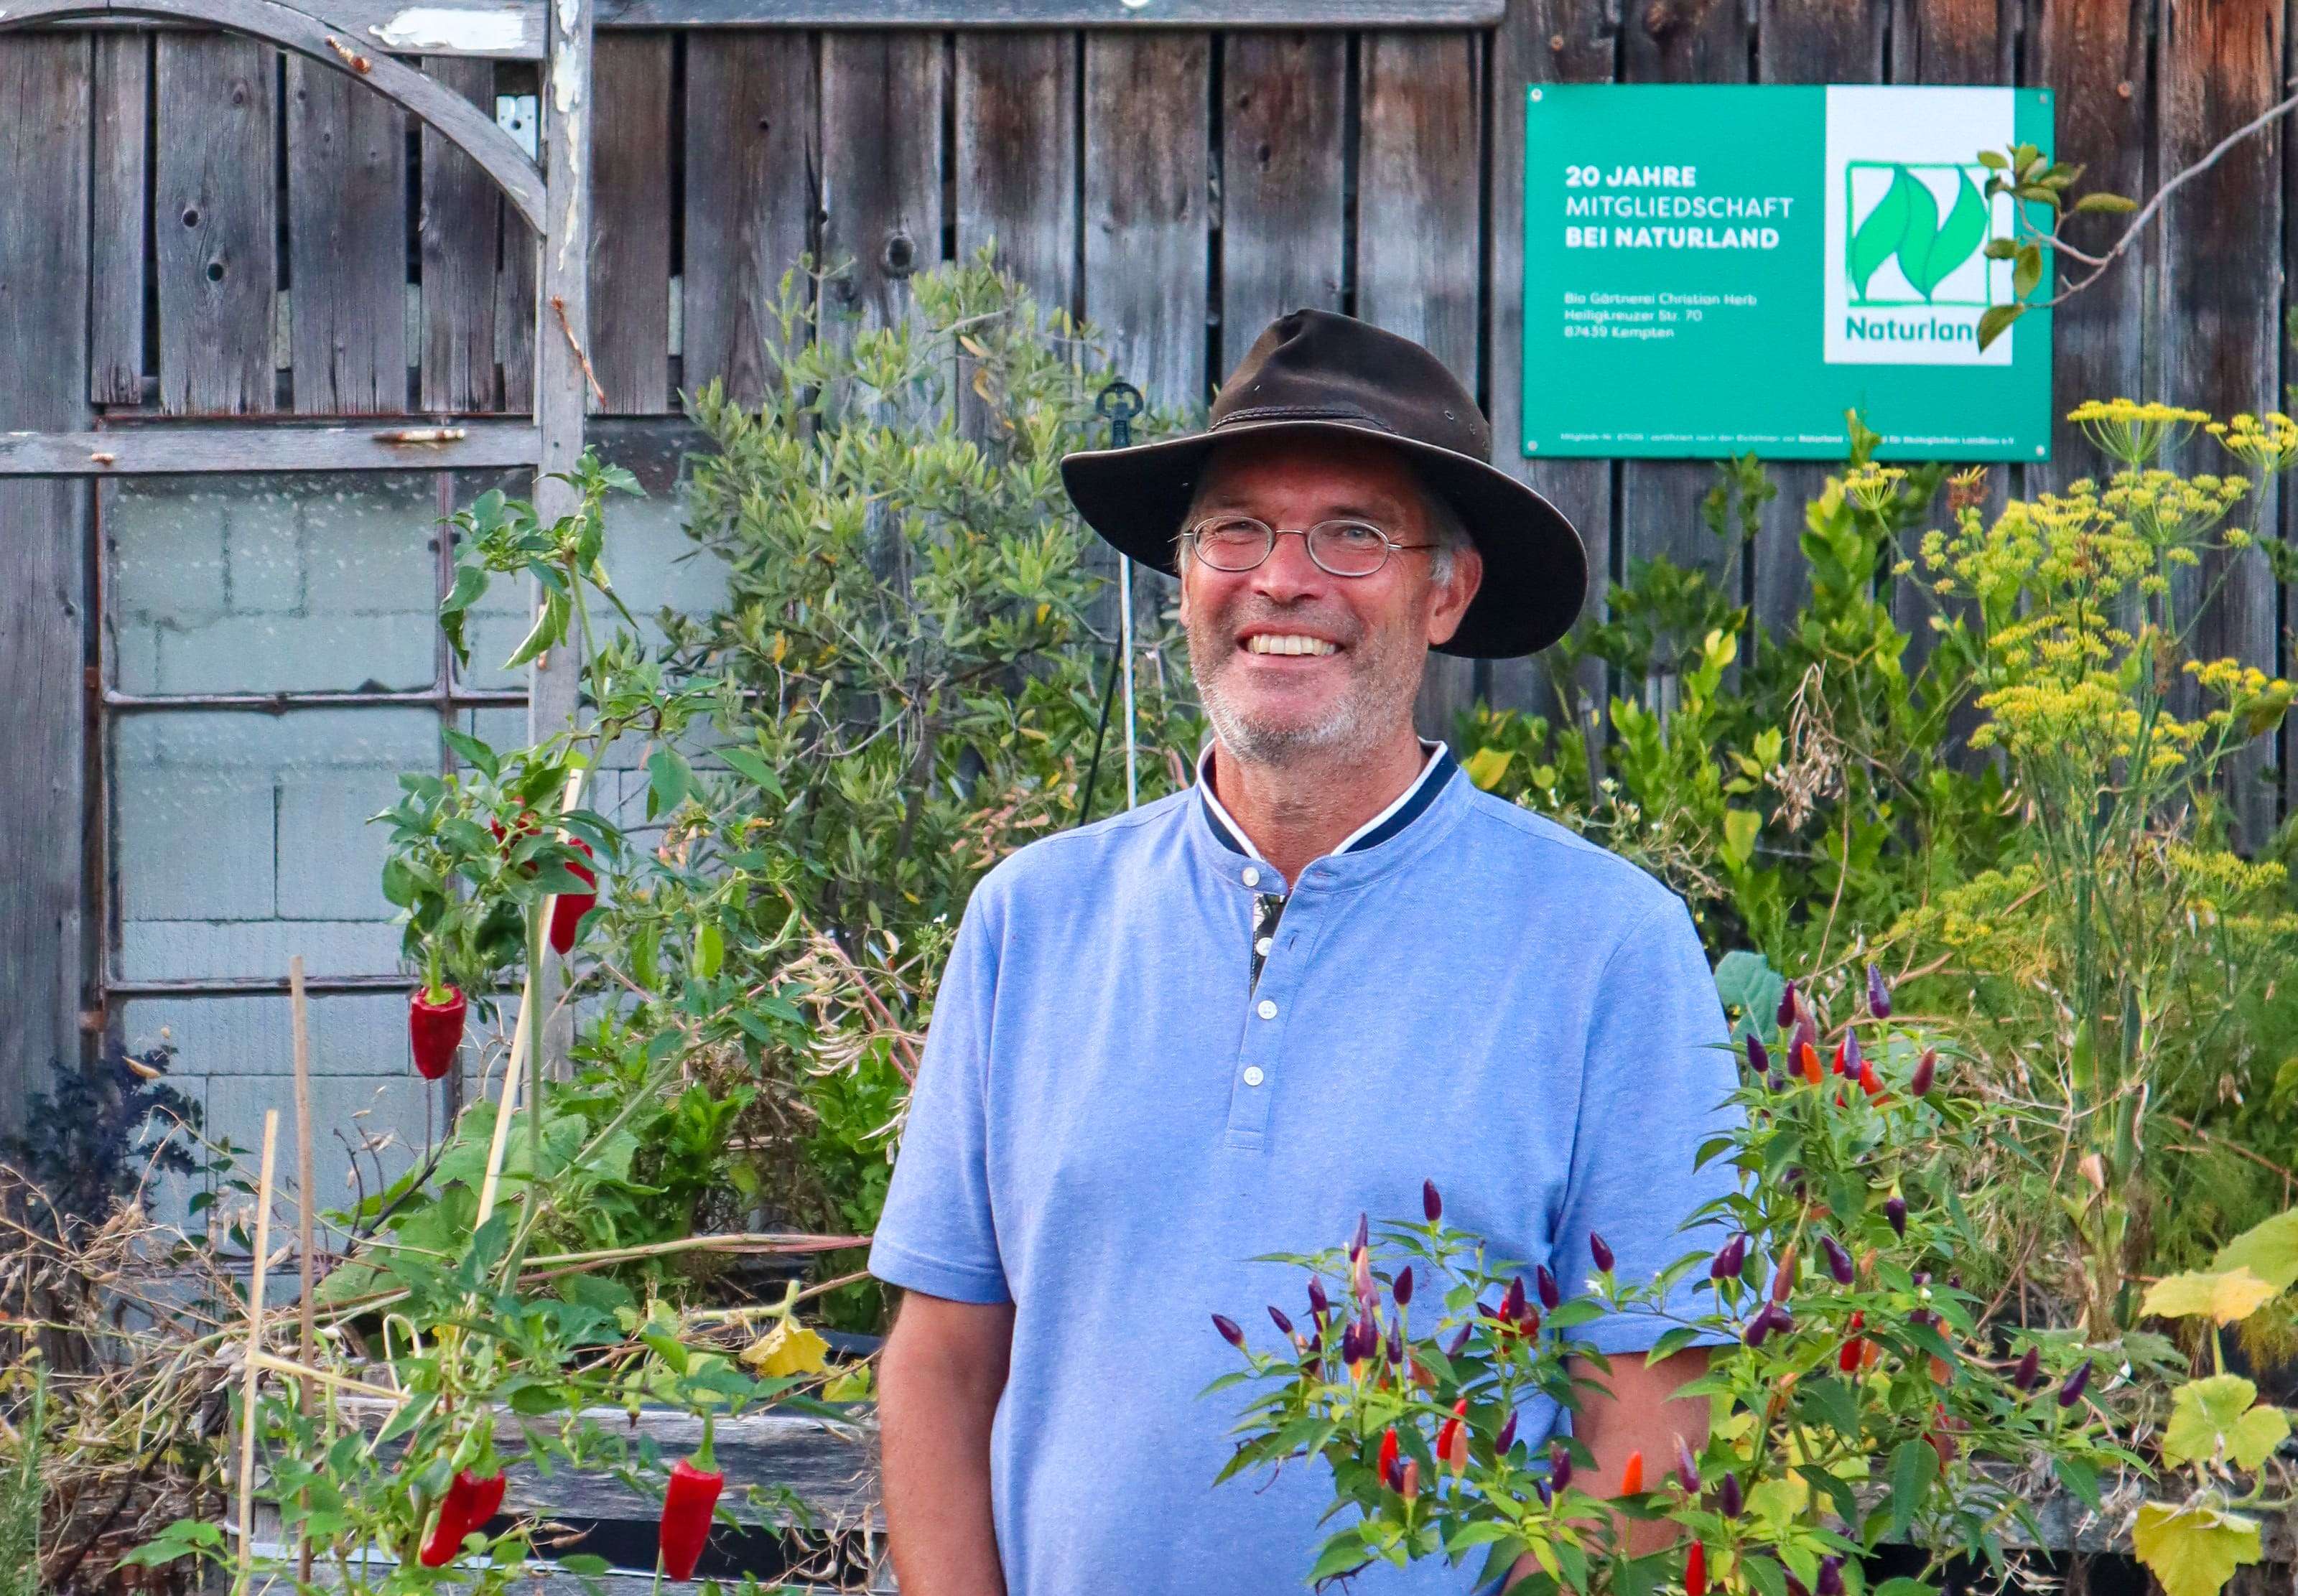 Naturland Gärtner Christian Herb gibt wertvolle Tipps zum insektenfreundlichen Gärtnern.